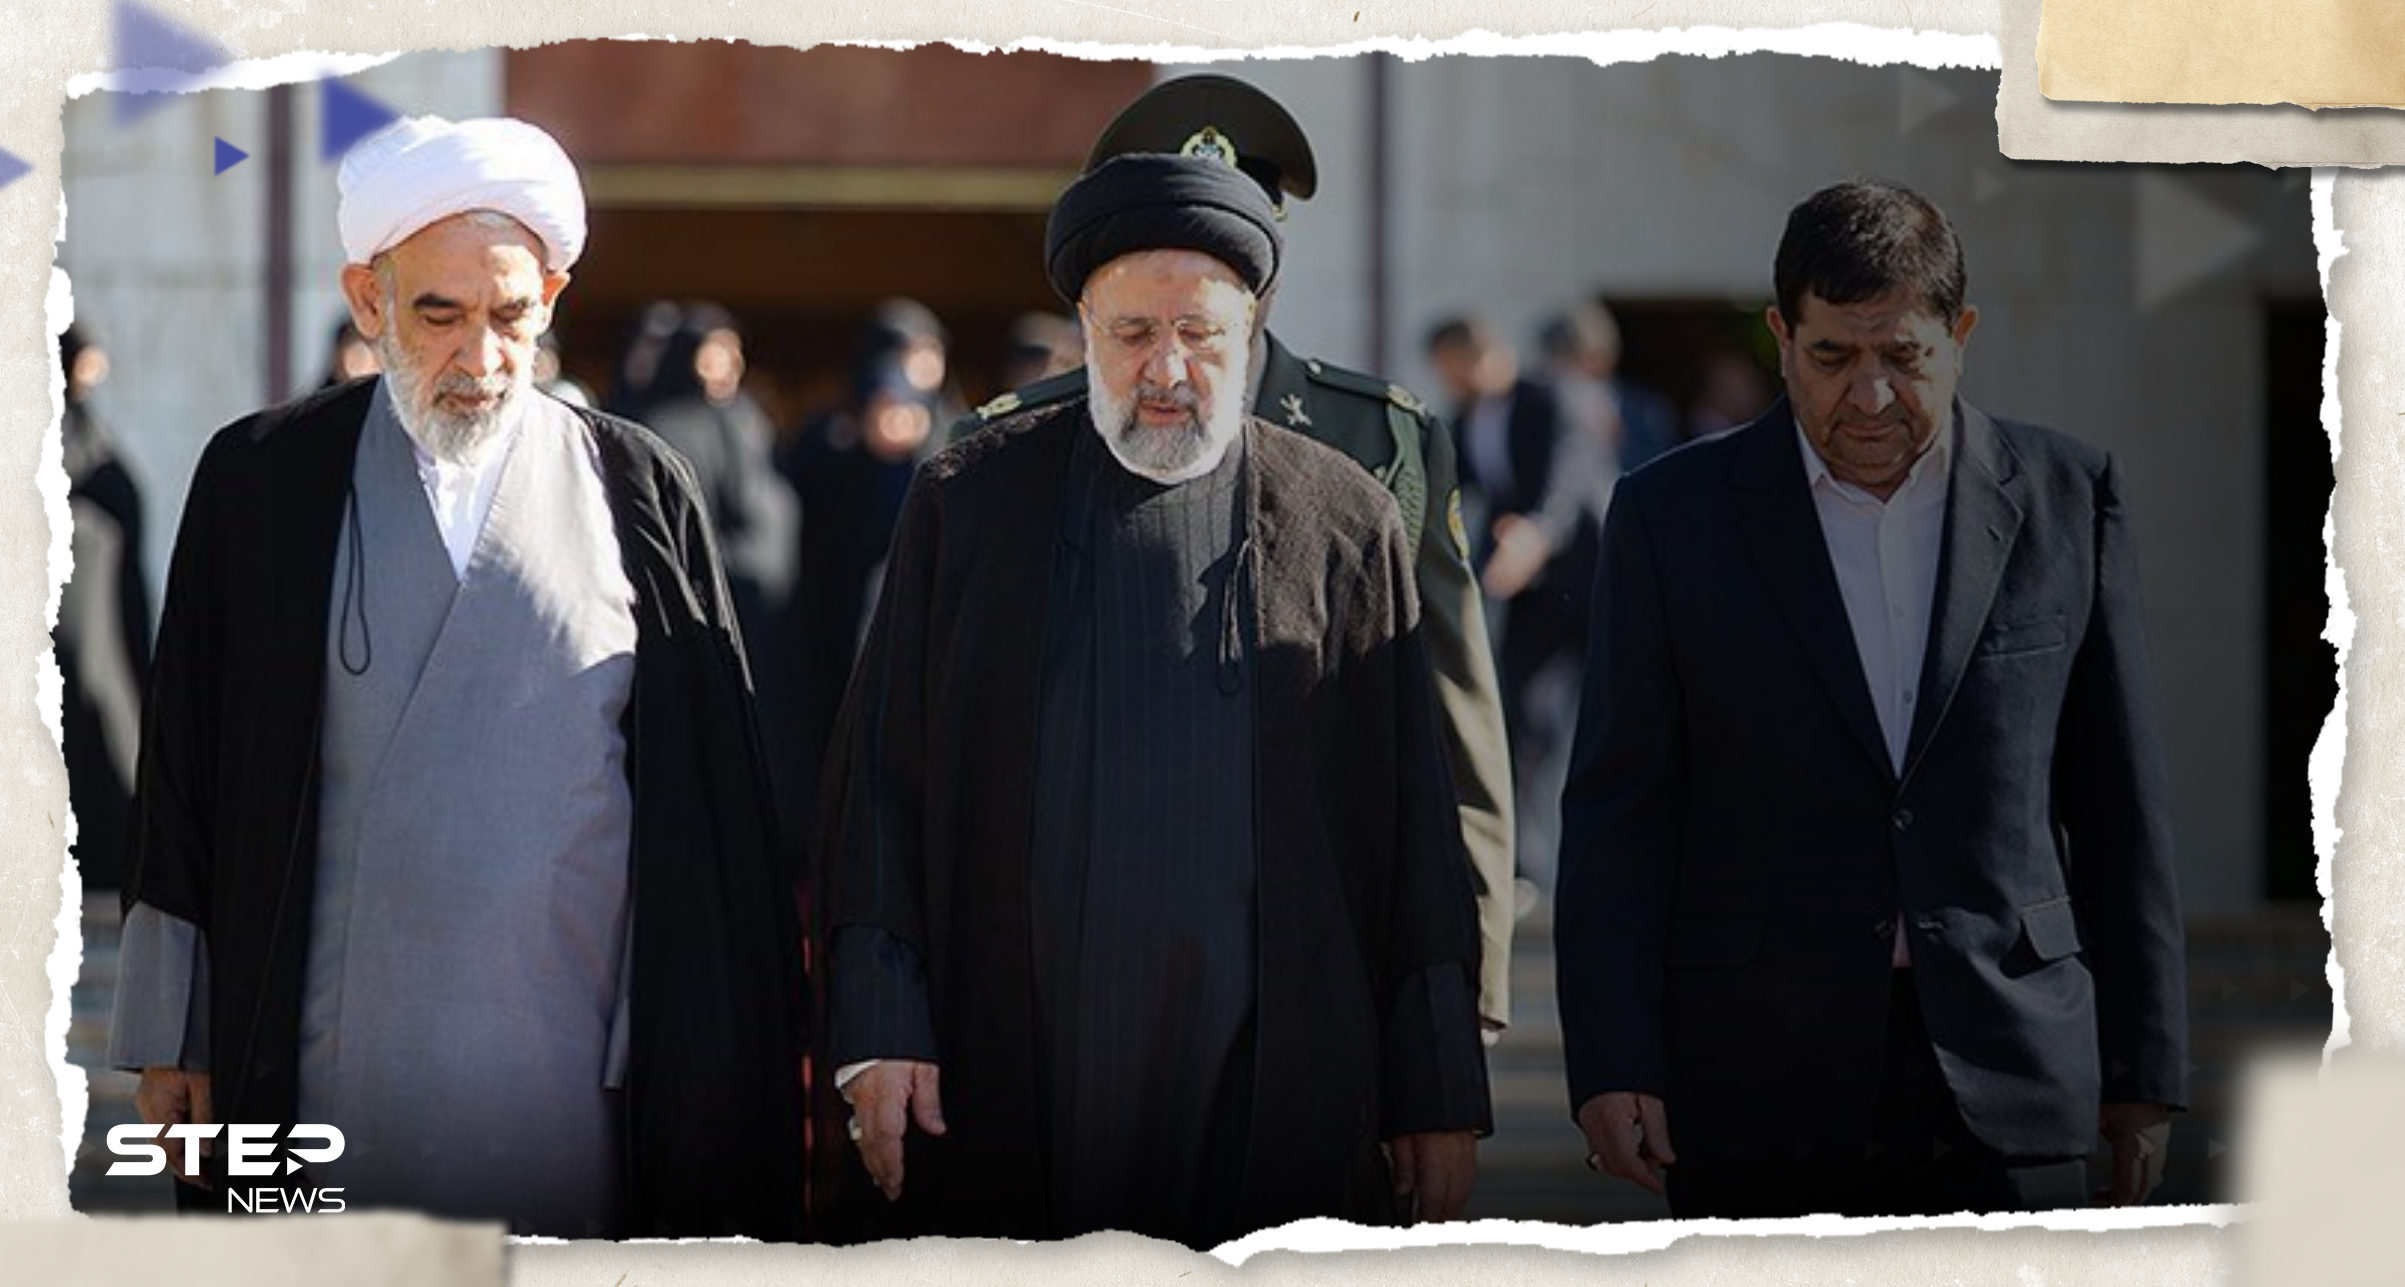 الرئيس الإيراني إبراهيم رئيسي يصل دمشق ومصادر إعلامية تكشف هدف الزيارة (صور) 